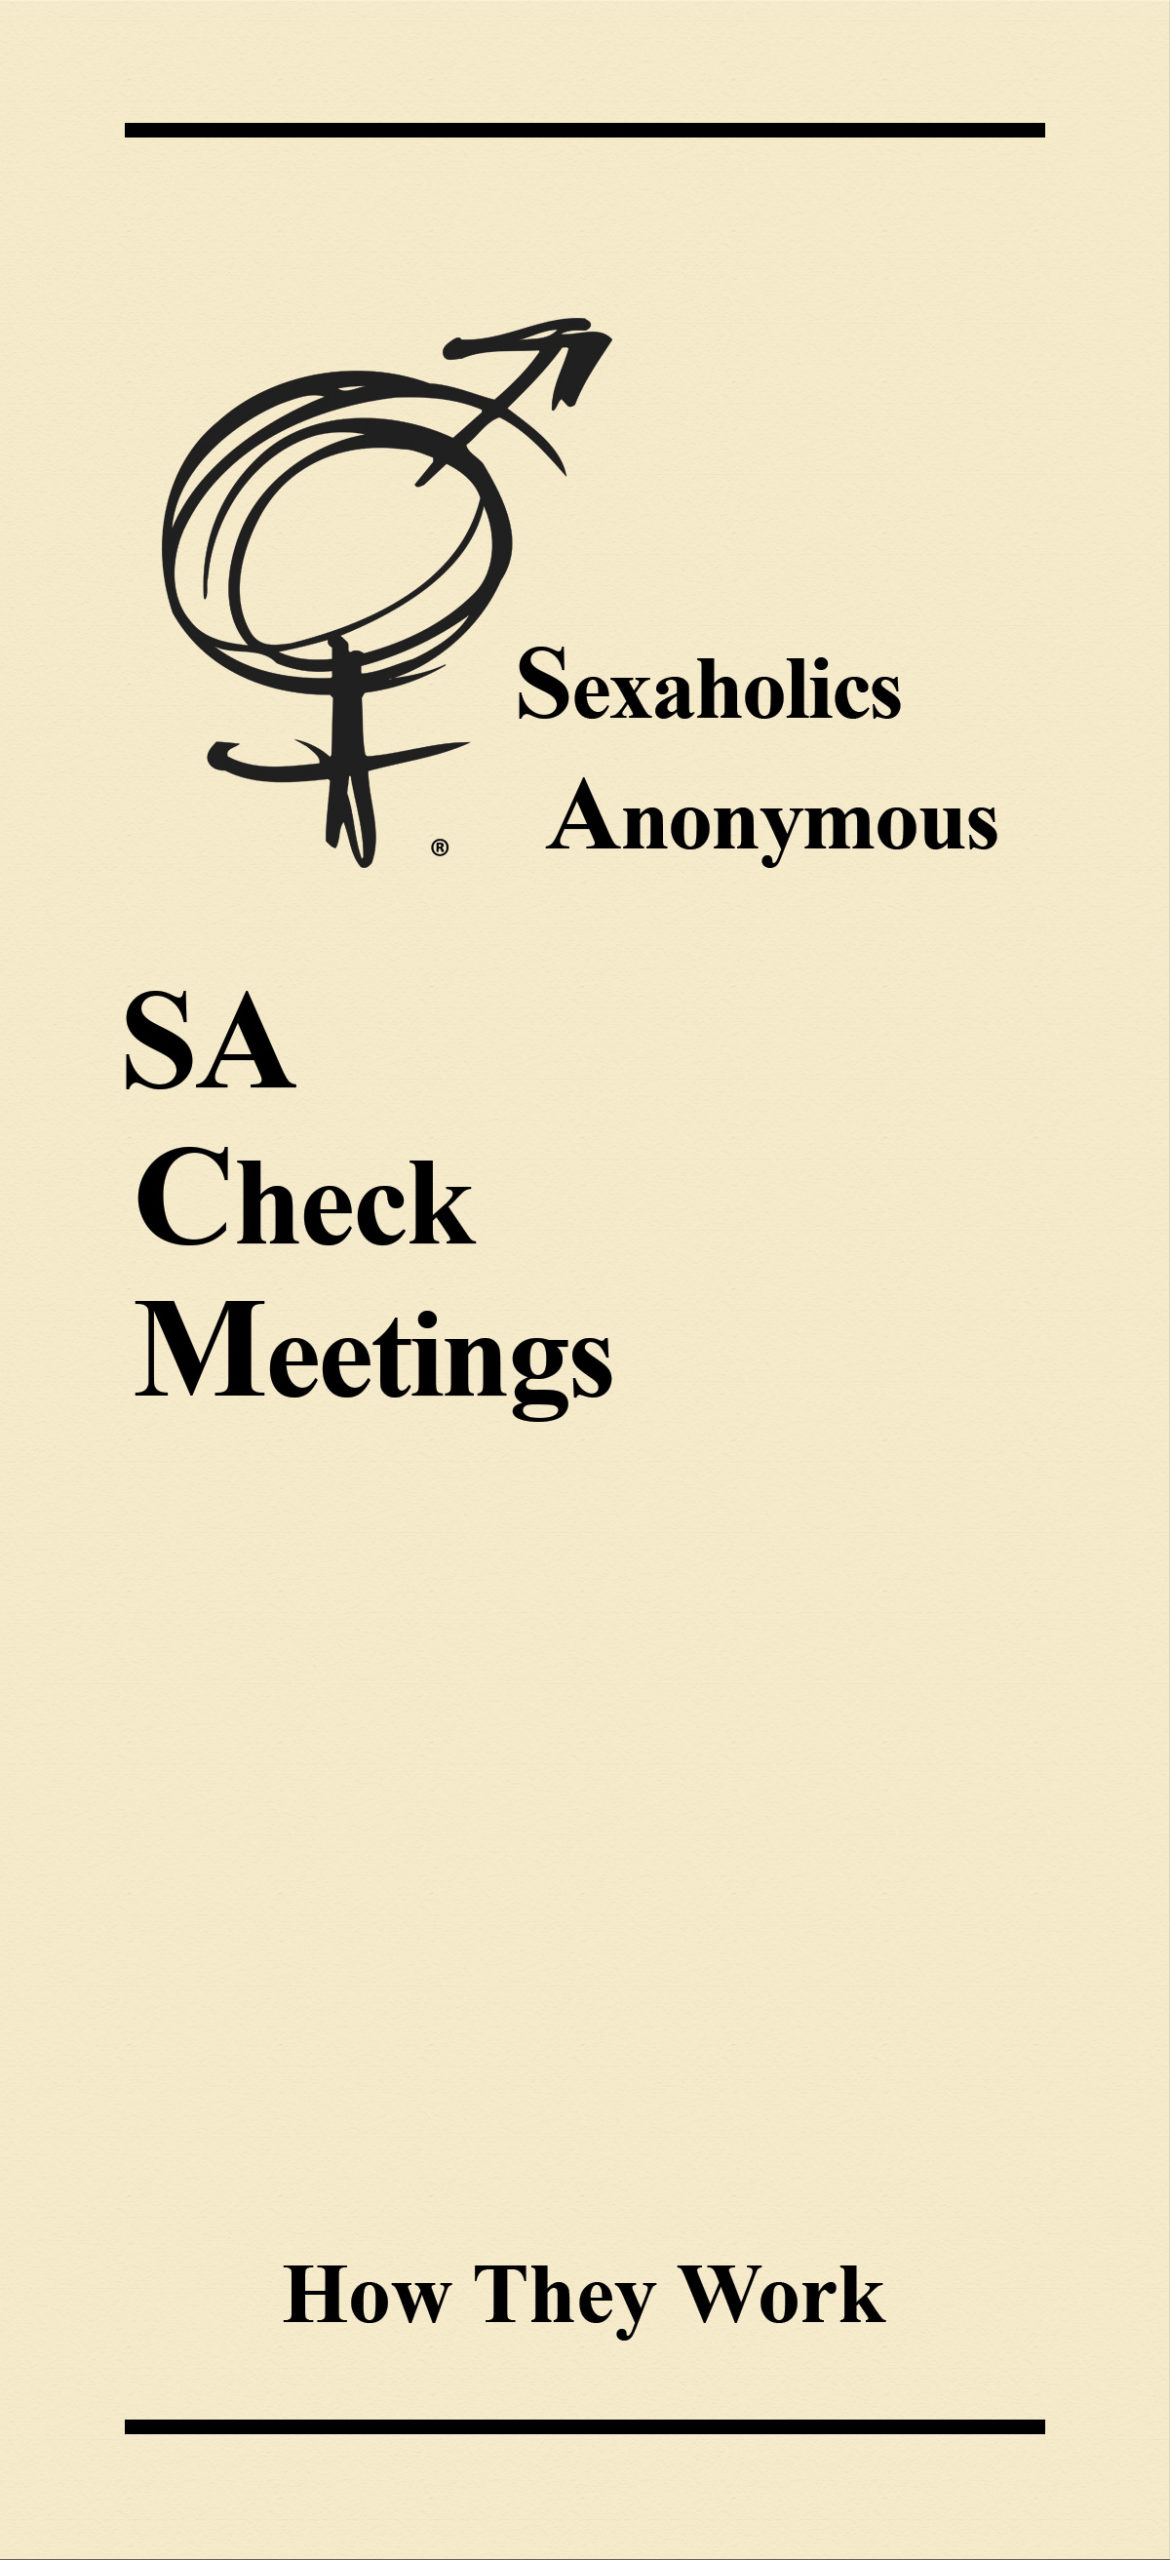 SA Check Meetings